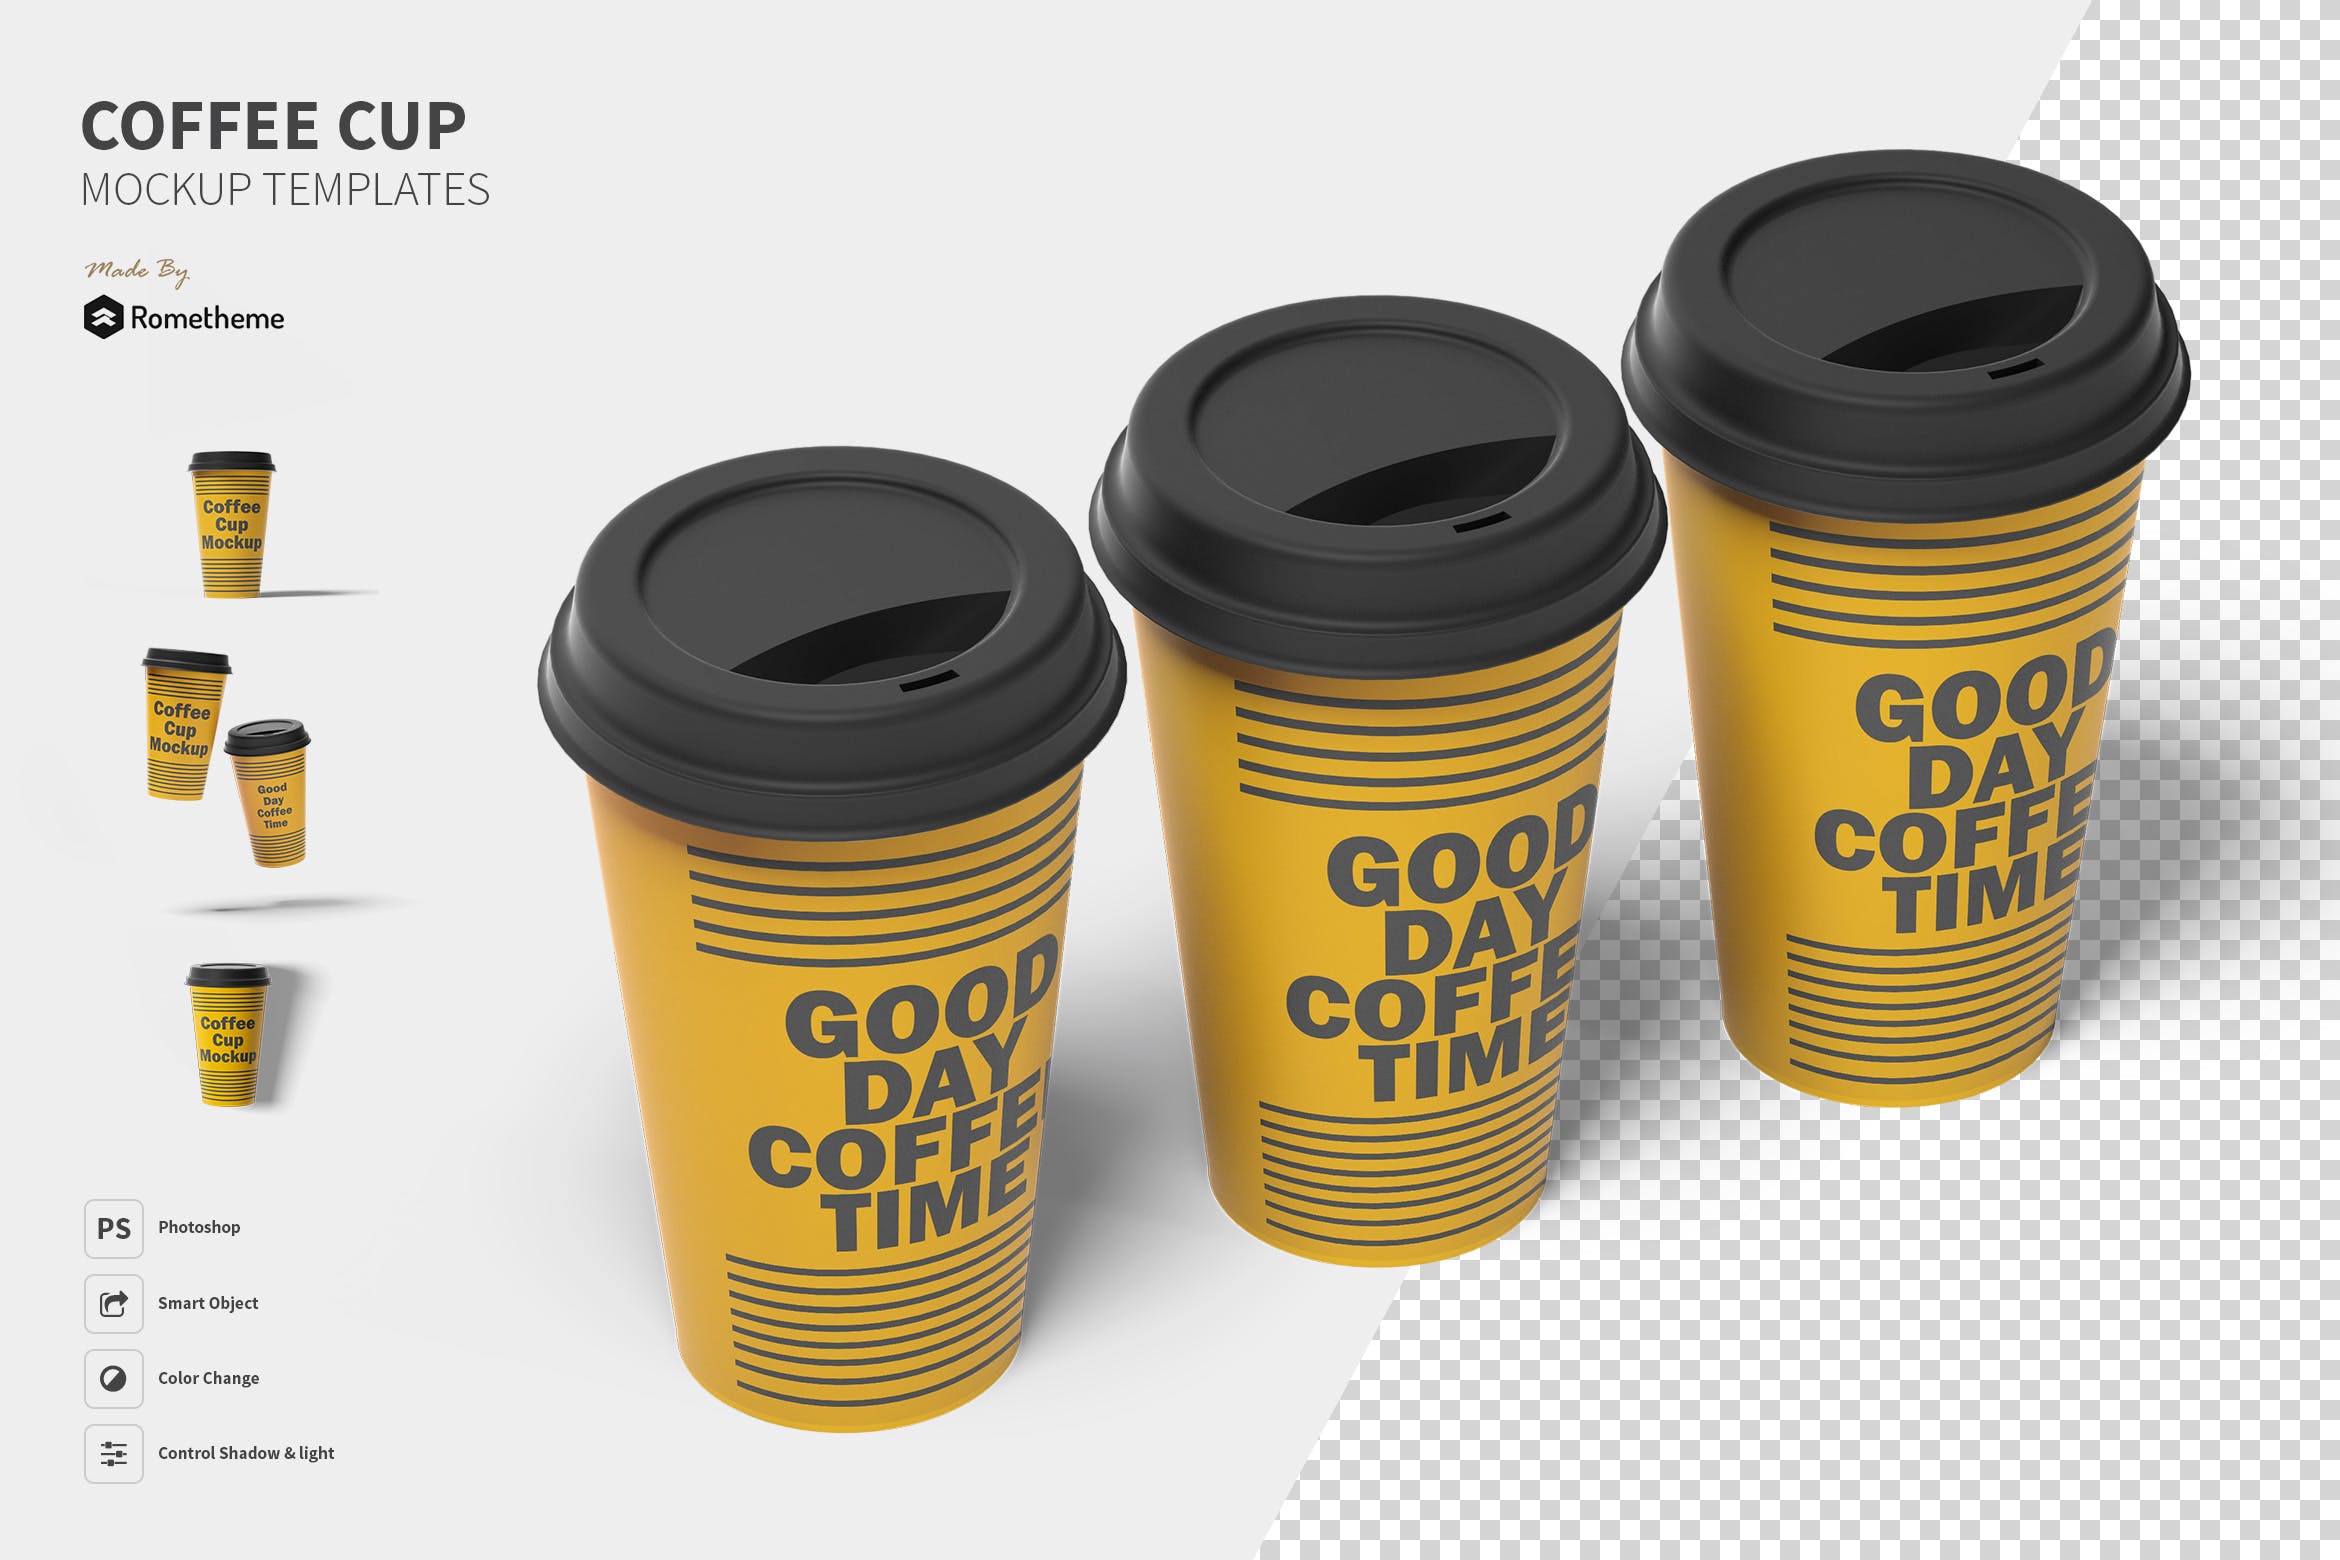 一次性咖啡纸杯设计图蚂蚁素材精选 Coffee Cup Mockup Set FH插图